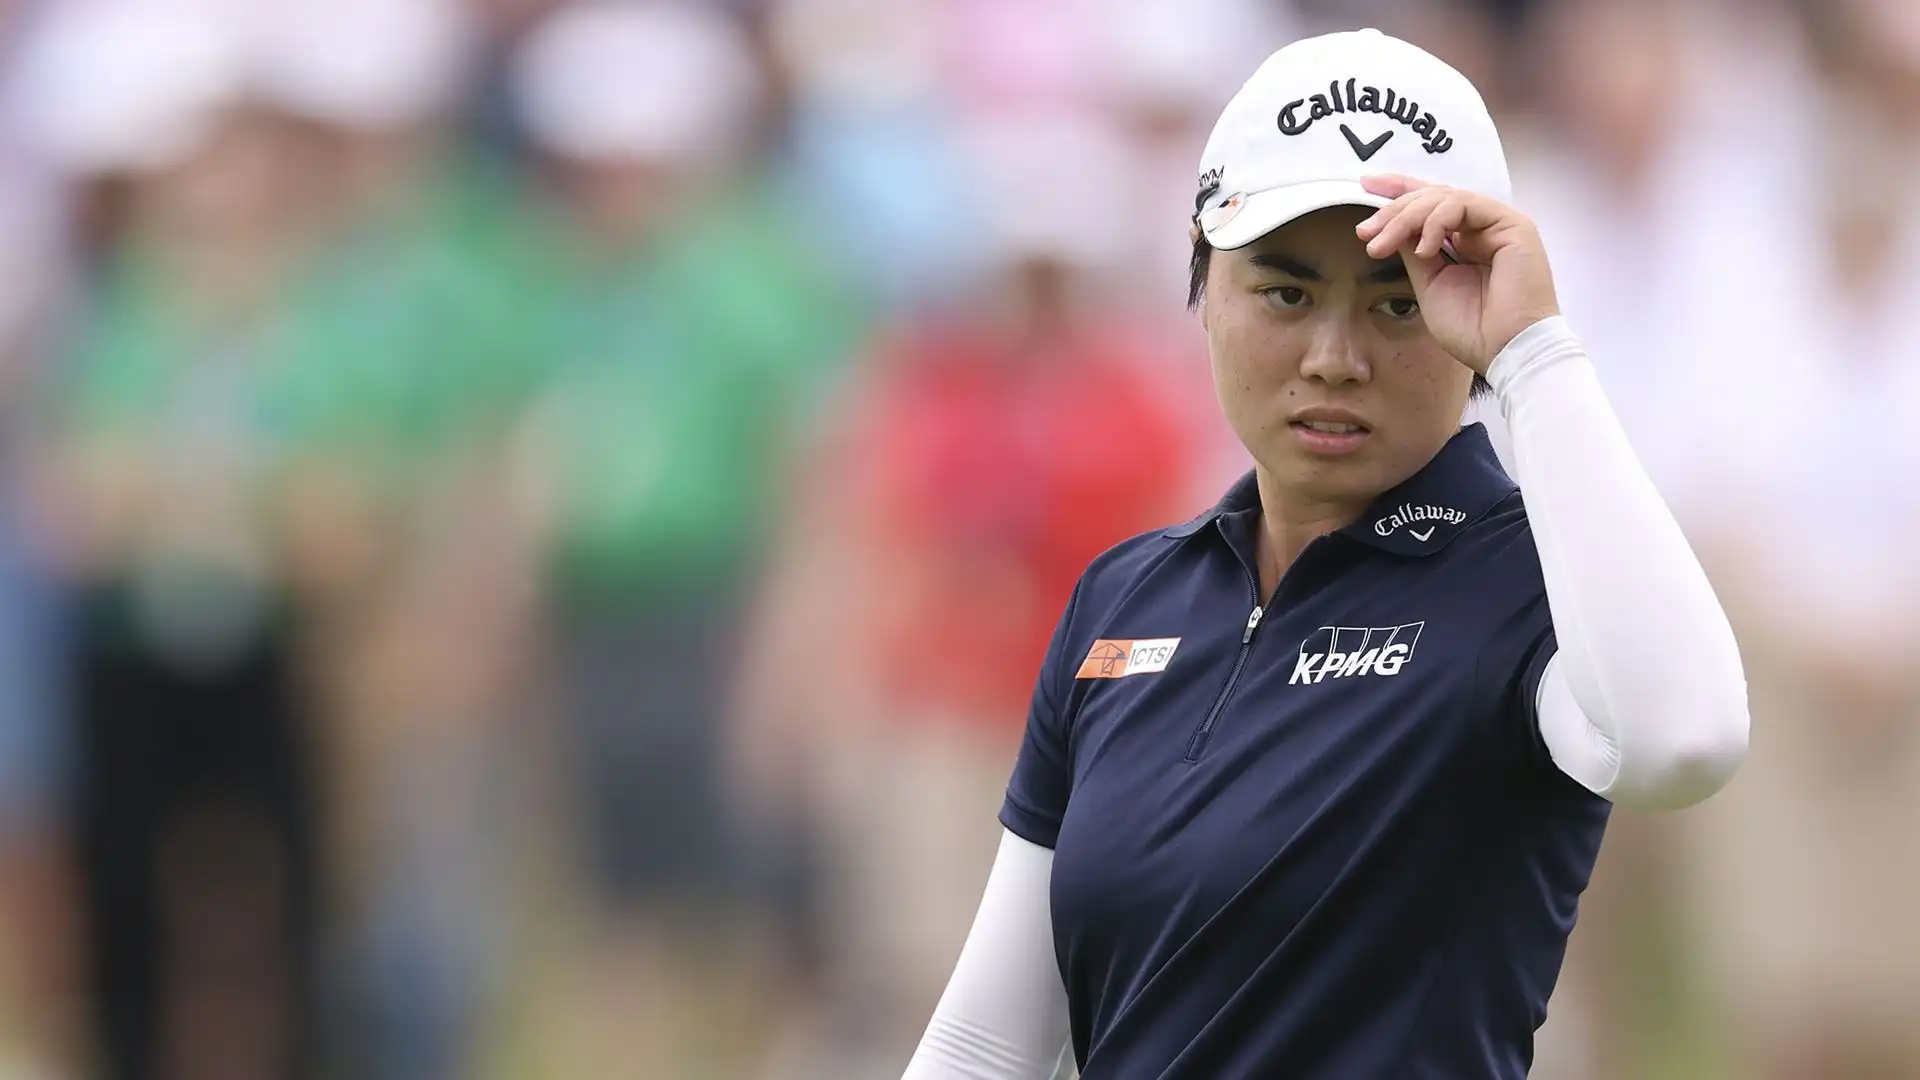 Yuka Saso (Golf): guadagni annui stimati 800mila dollari